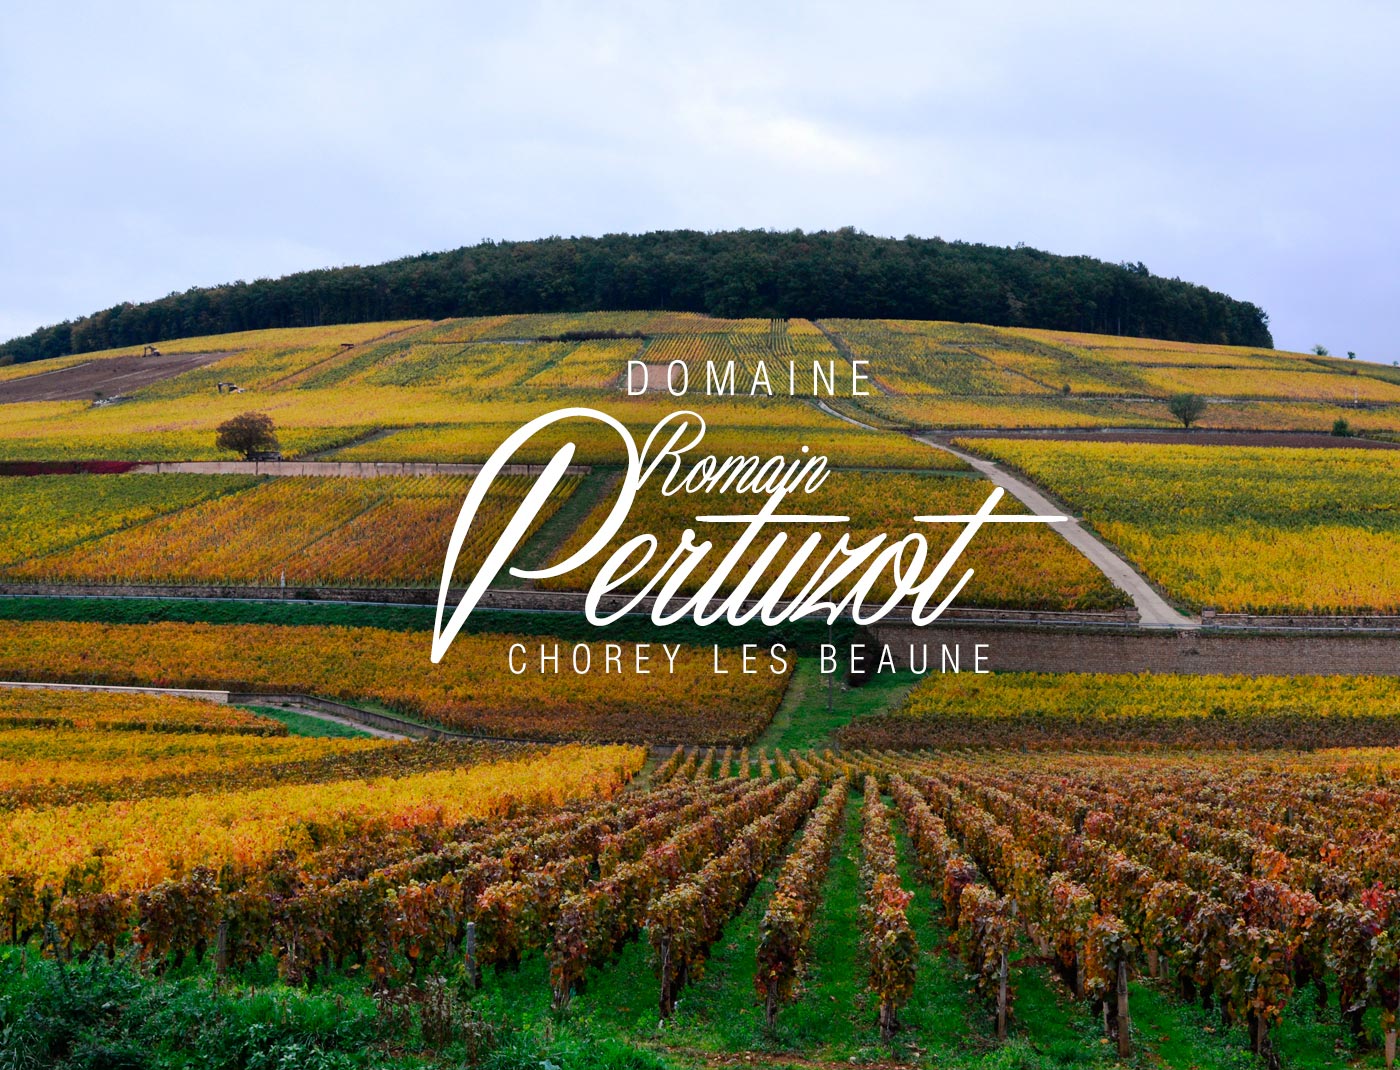 Domaine Romain Pertuzot - Chorey les Beaune